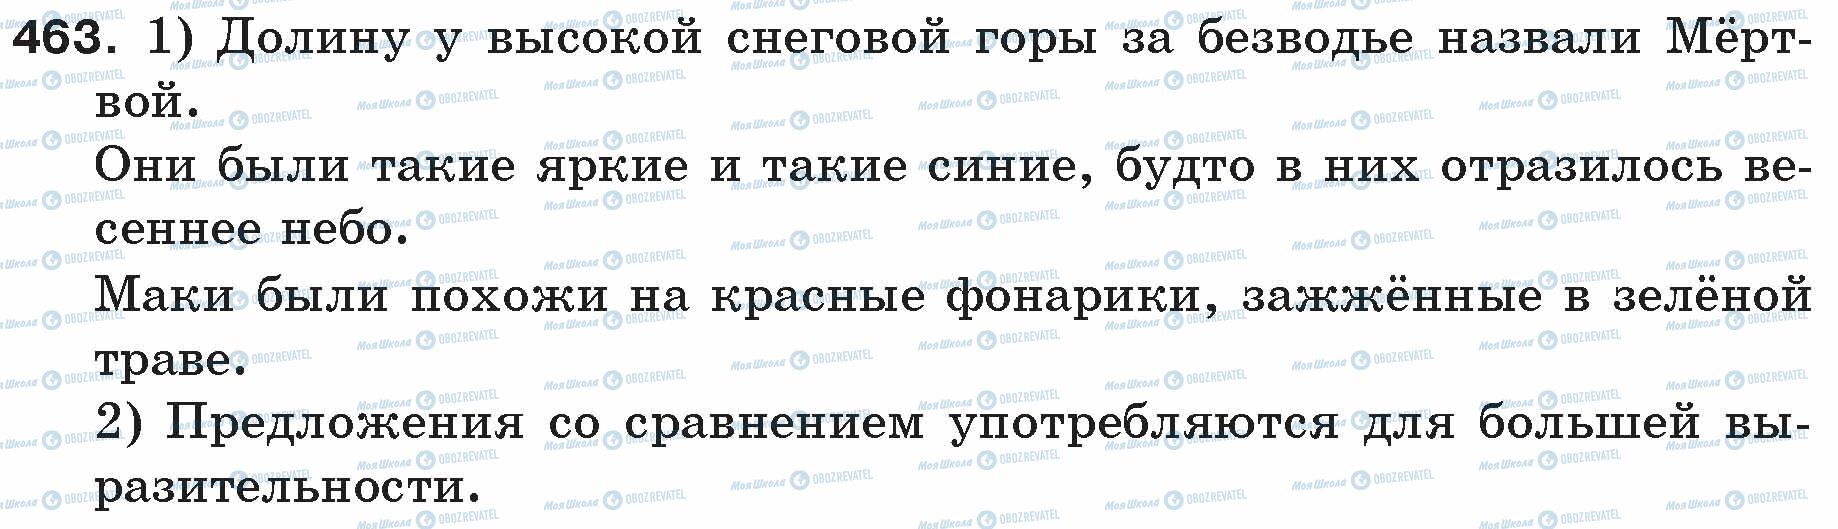 ГДЗ Російська мова 5 клас сторінка 463